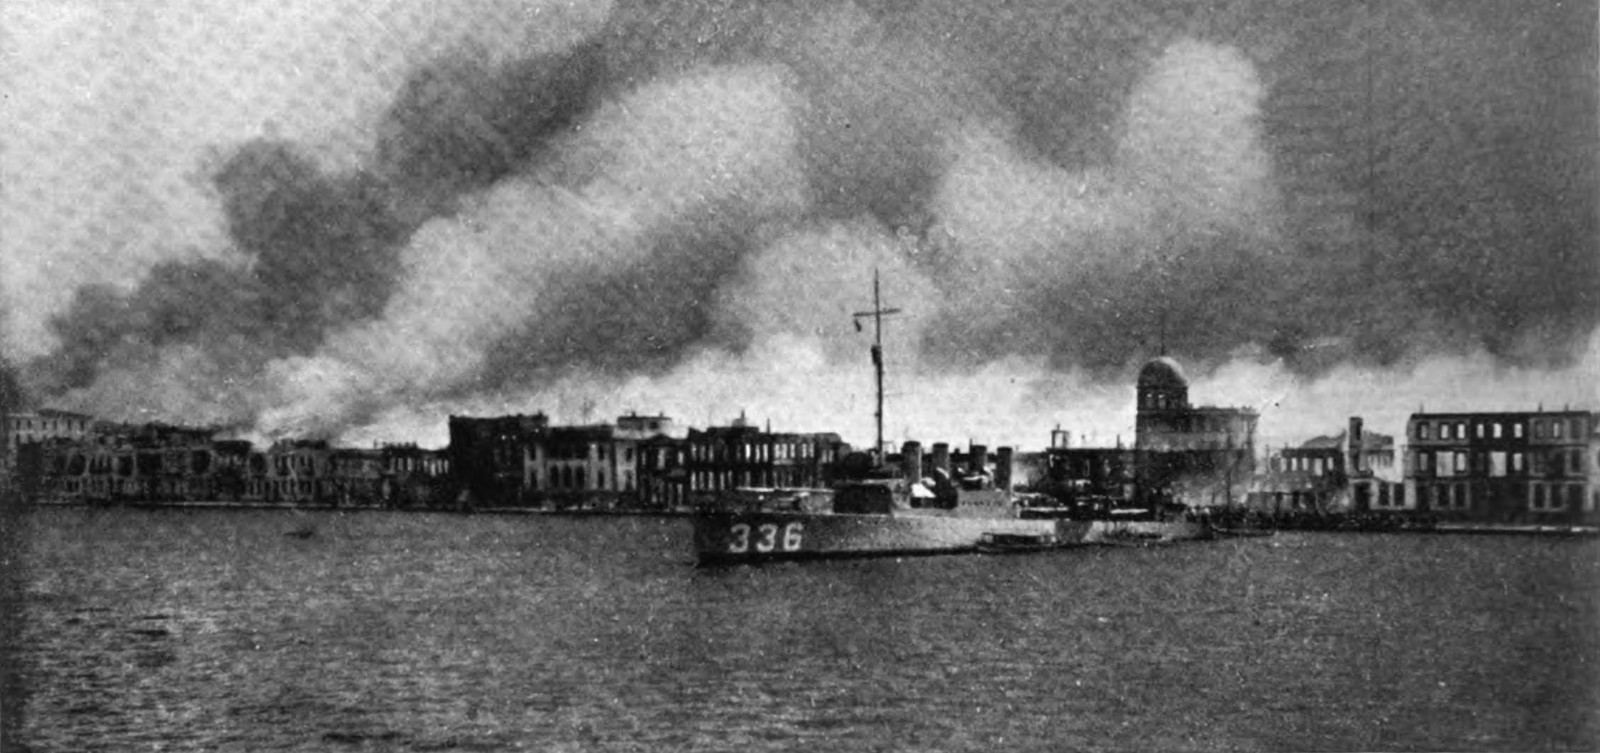 ספינת חילל הים האמריקנית USS Litchfield שסייעה בחילוץ ניצולים מהשריפה הגדולה באיזמיר, ספטמבר 1922. (צילום: International Newsreel/ wikimedia).